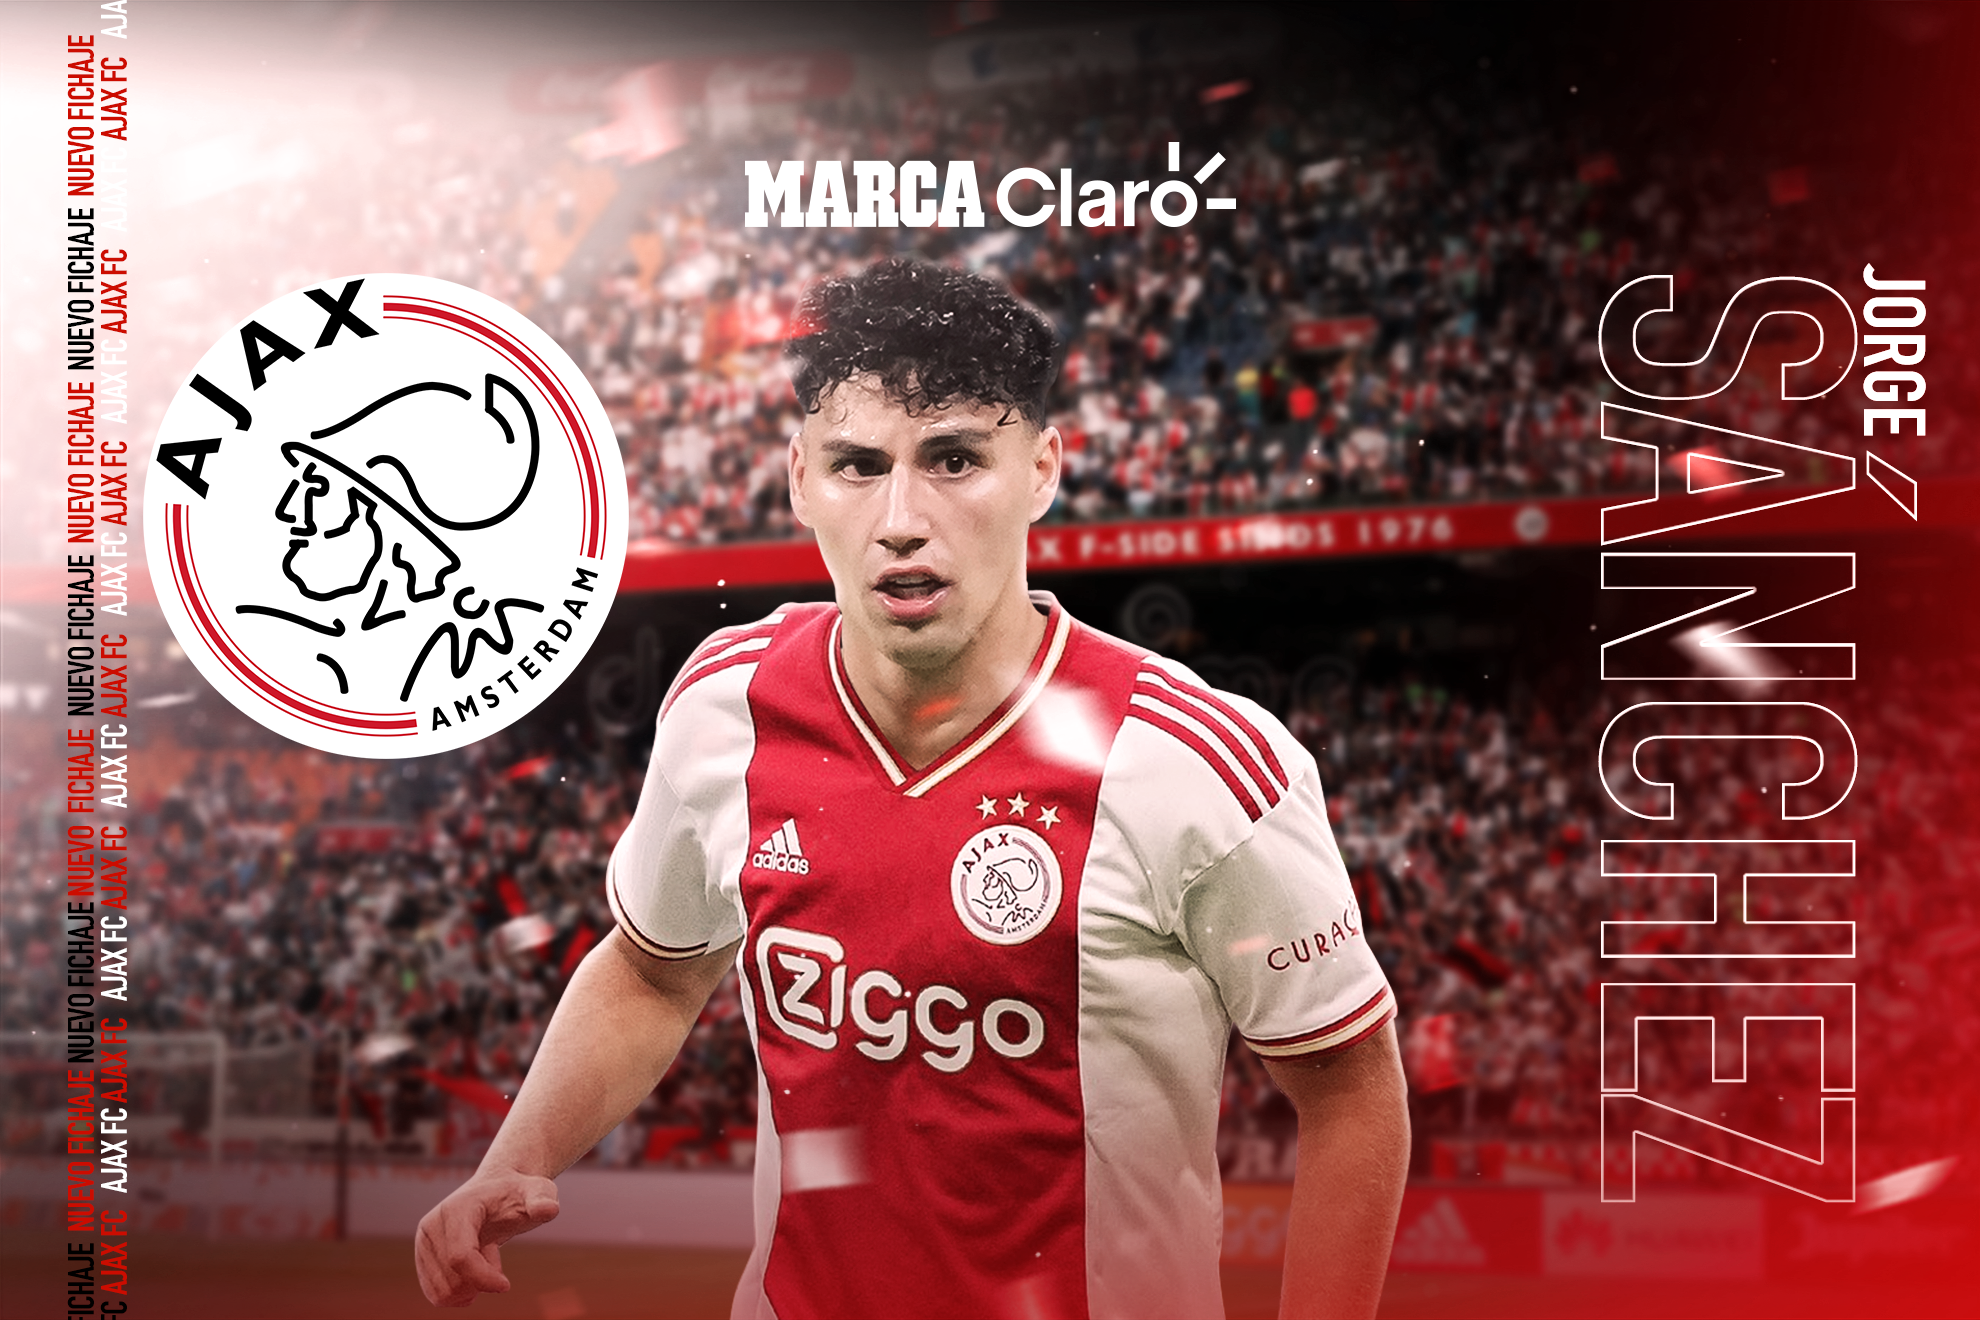 Jorge Sánchez deja al América y es el nuevo fichaje del Ajax  | MARCA Claro